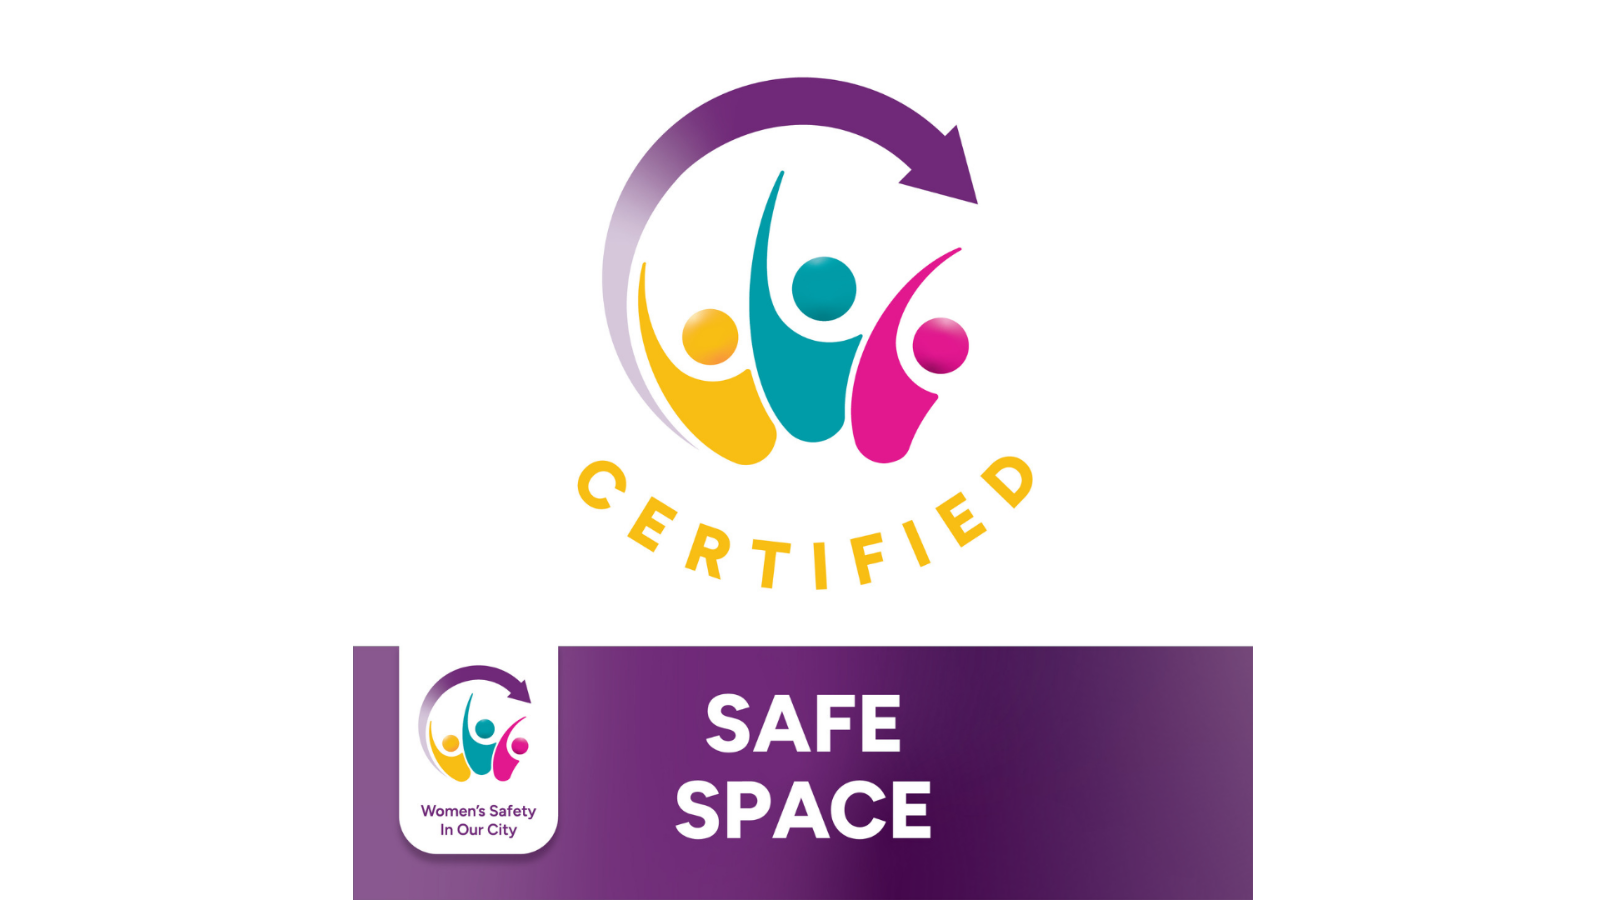 Chelmsford Women's Safety Charter 'Safe Space' Window Sticker